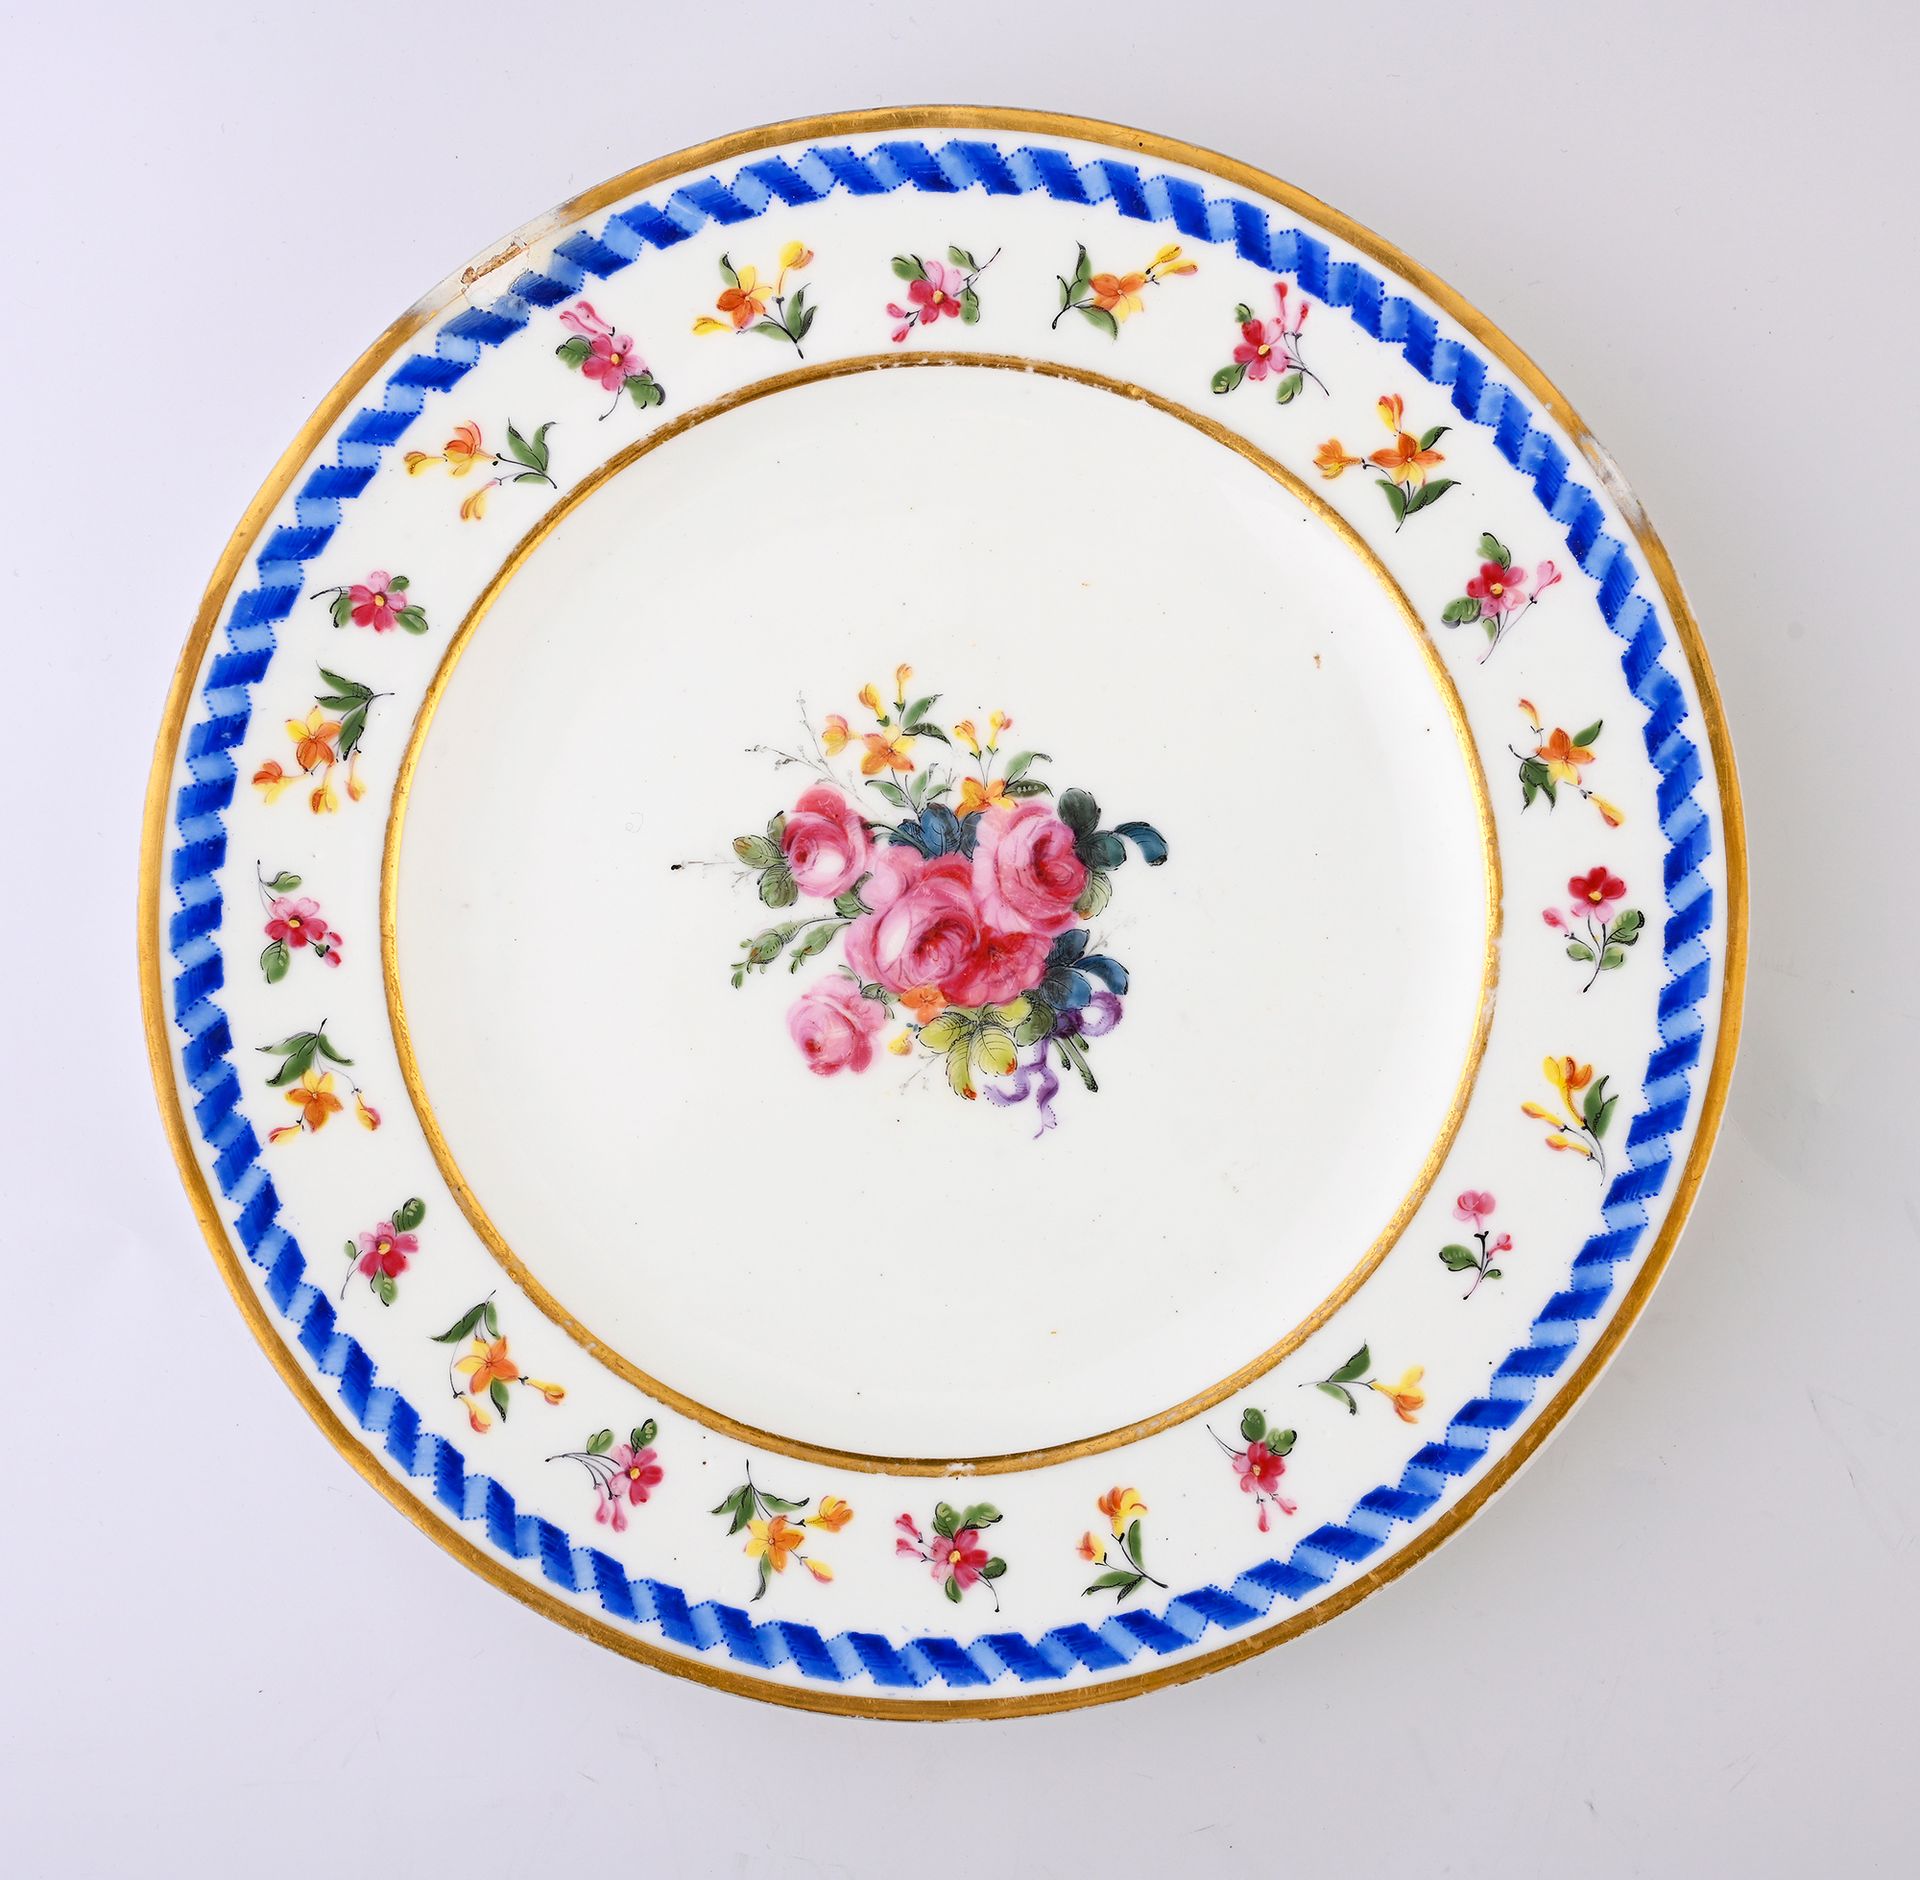 Null 18世纪末塞夫勒瓷器 "unie "盘
RF和塞夫勒蓝色标记，装饰者标记为Descoins夫人
中央有多色和金色的花束装饰，翅膀上有一系列粉色和黄色的&hellip;